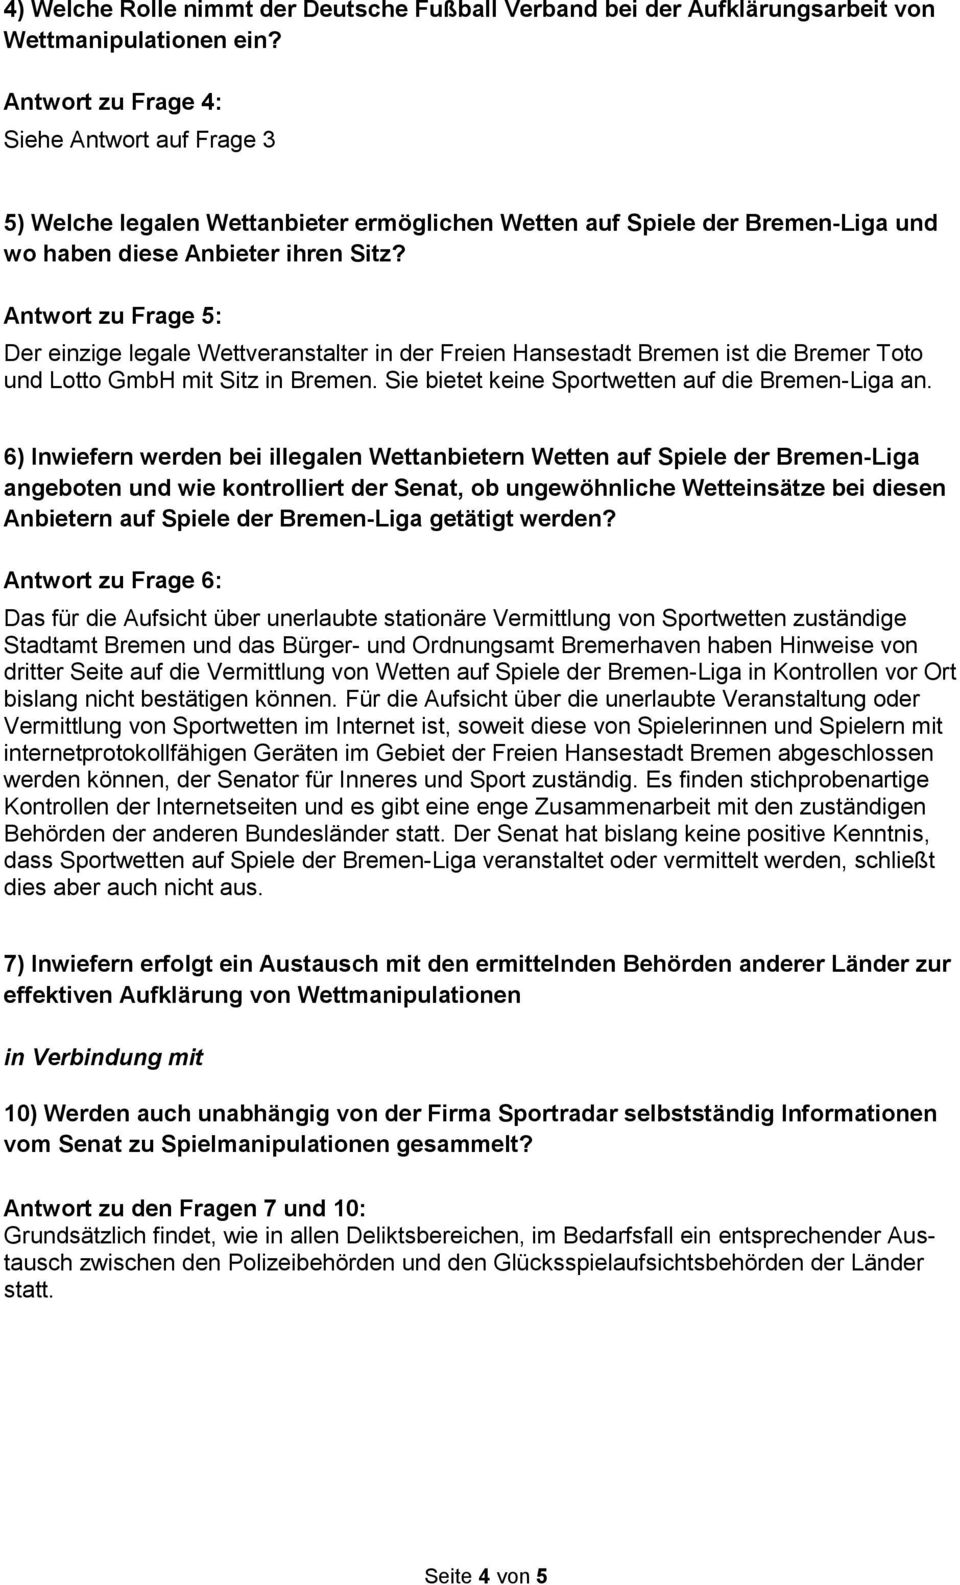 Antwort zu Frage 5: Der einzige legale Wettveranstalter in der Freien Hansestadt Bremen ist die Bremer Toto und Lotto GmbH mit Sitz in Bremen. Sie bietet keine Sportwetten auf die Bremen-Liga an.